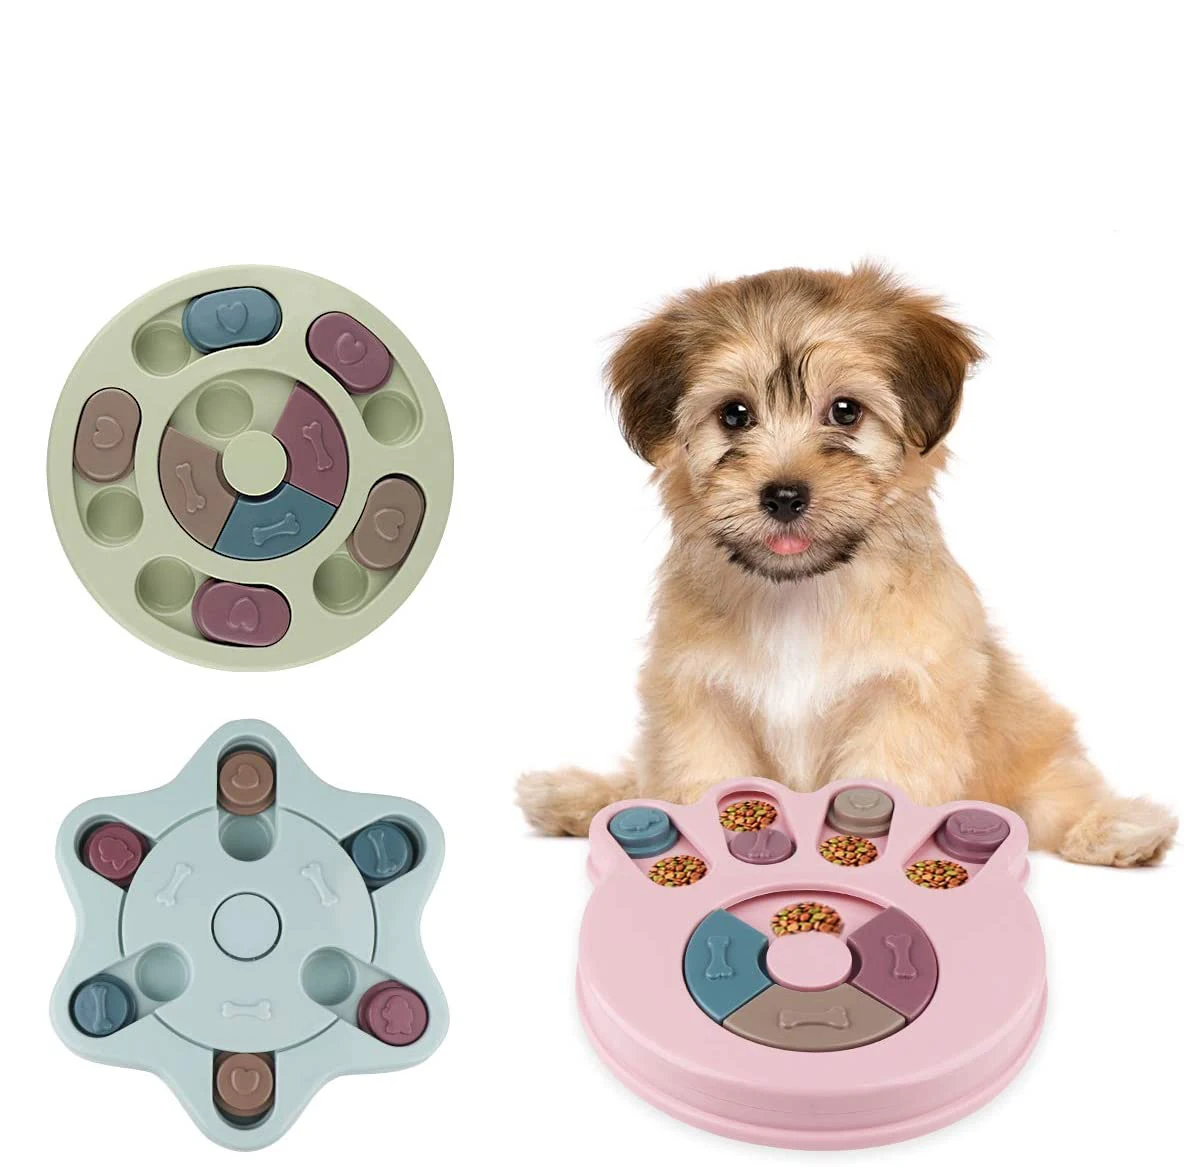 

Игрушки-головоломки для собак увеличение IQ Интерактивная медленно дозирующая Кормление Собак тренировочные игры кормушка для маленьких и ...